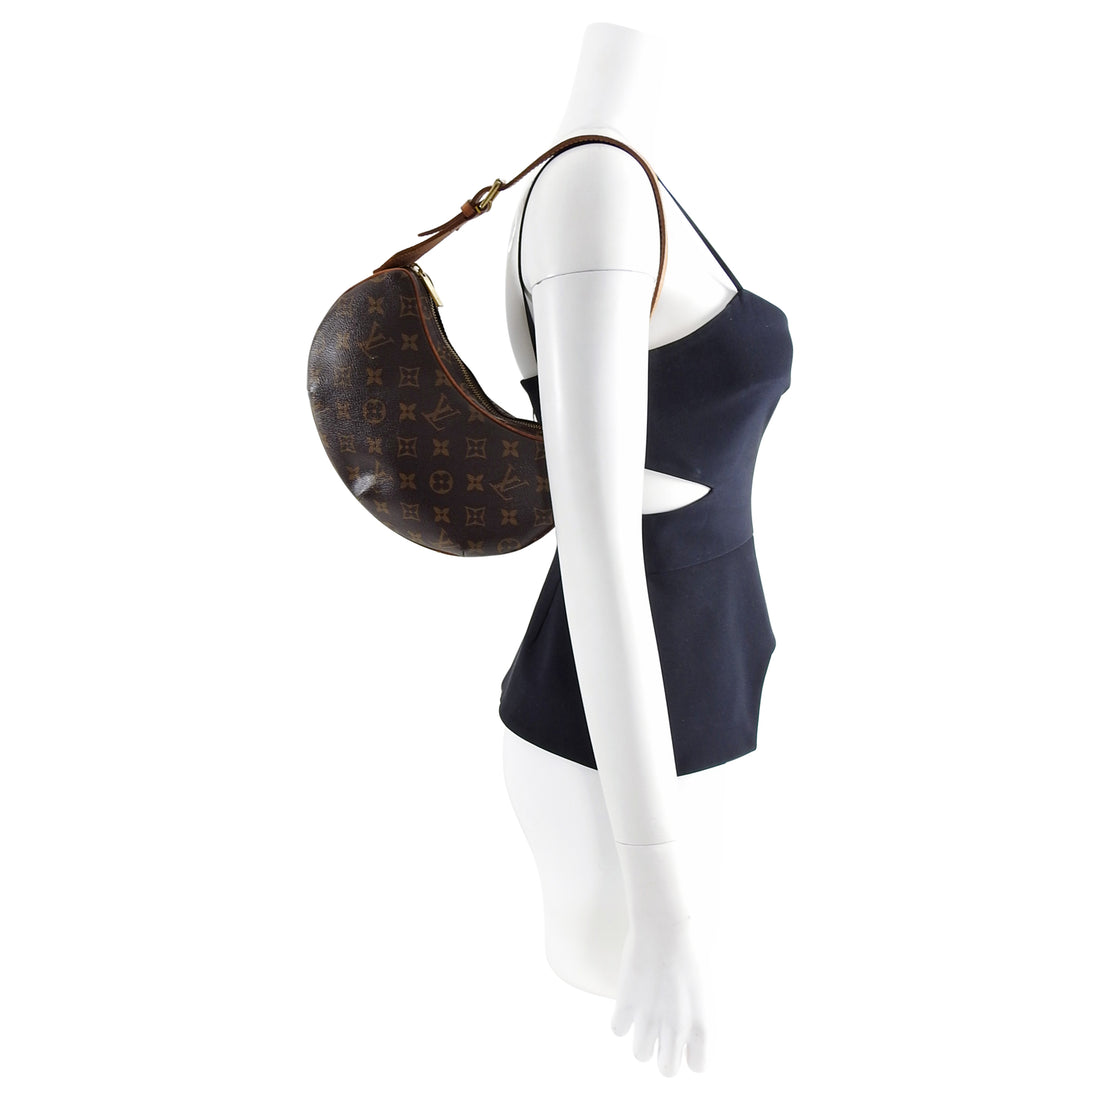 Louis Vuitton Monogram Small Croissant Shoulder Bag PM